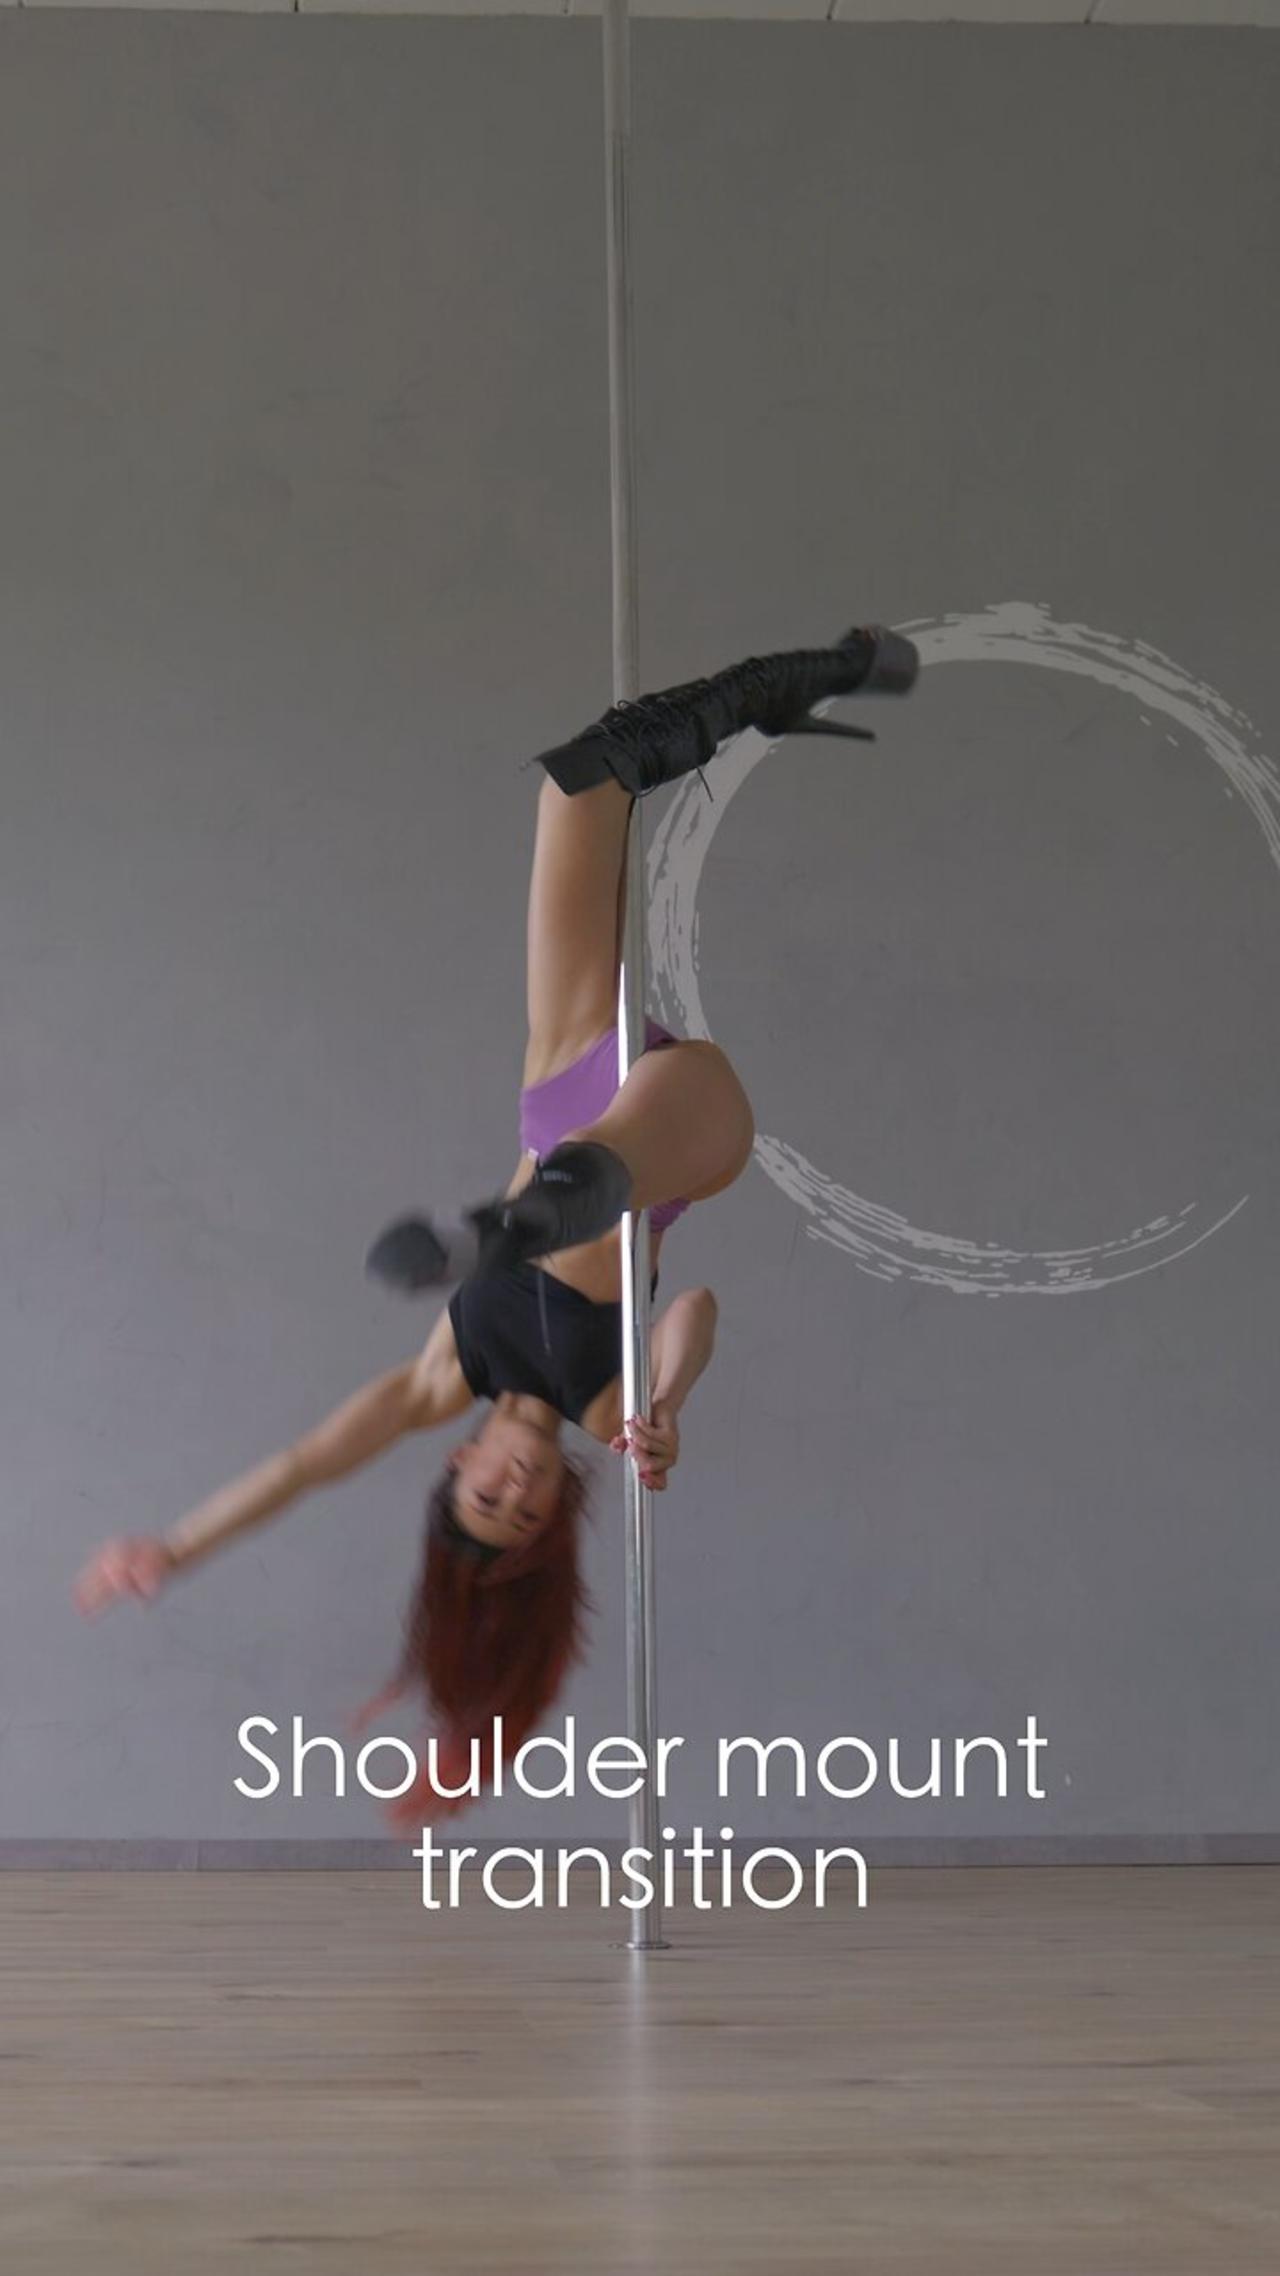 Pole dance Transition ideas | Shoulder mount